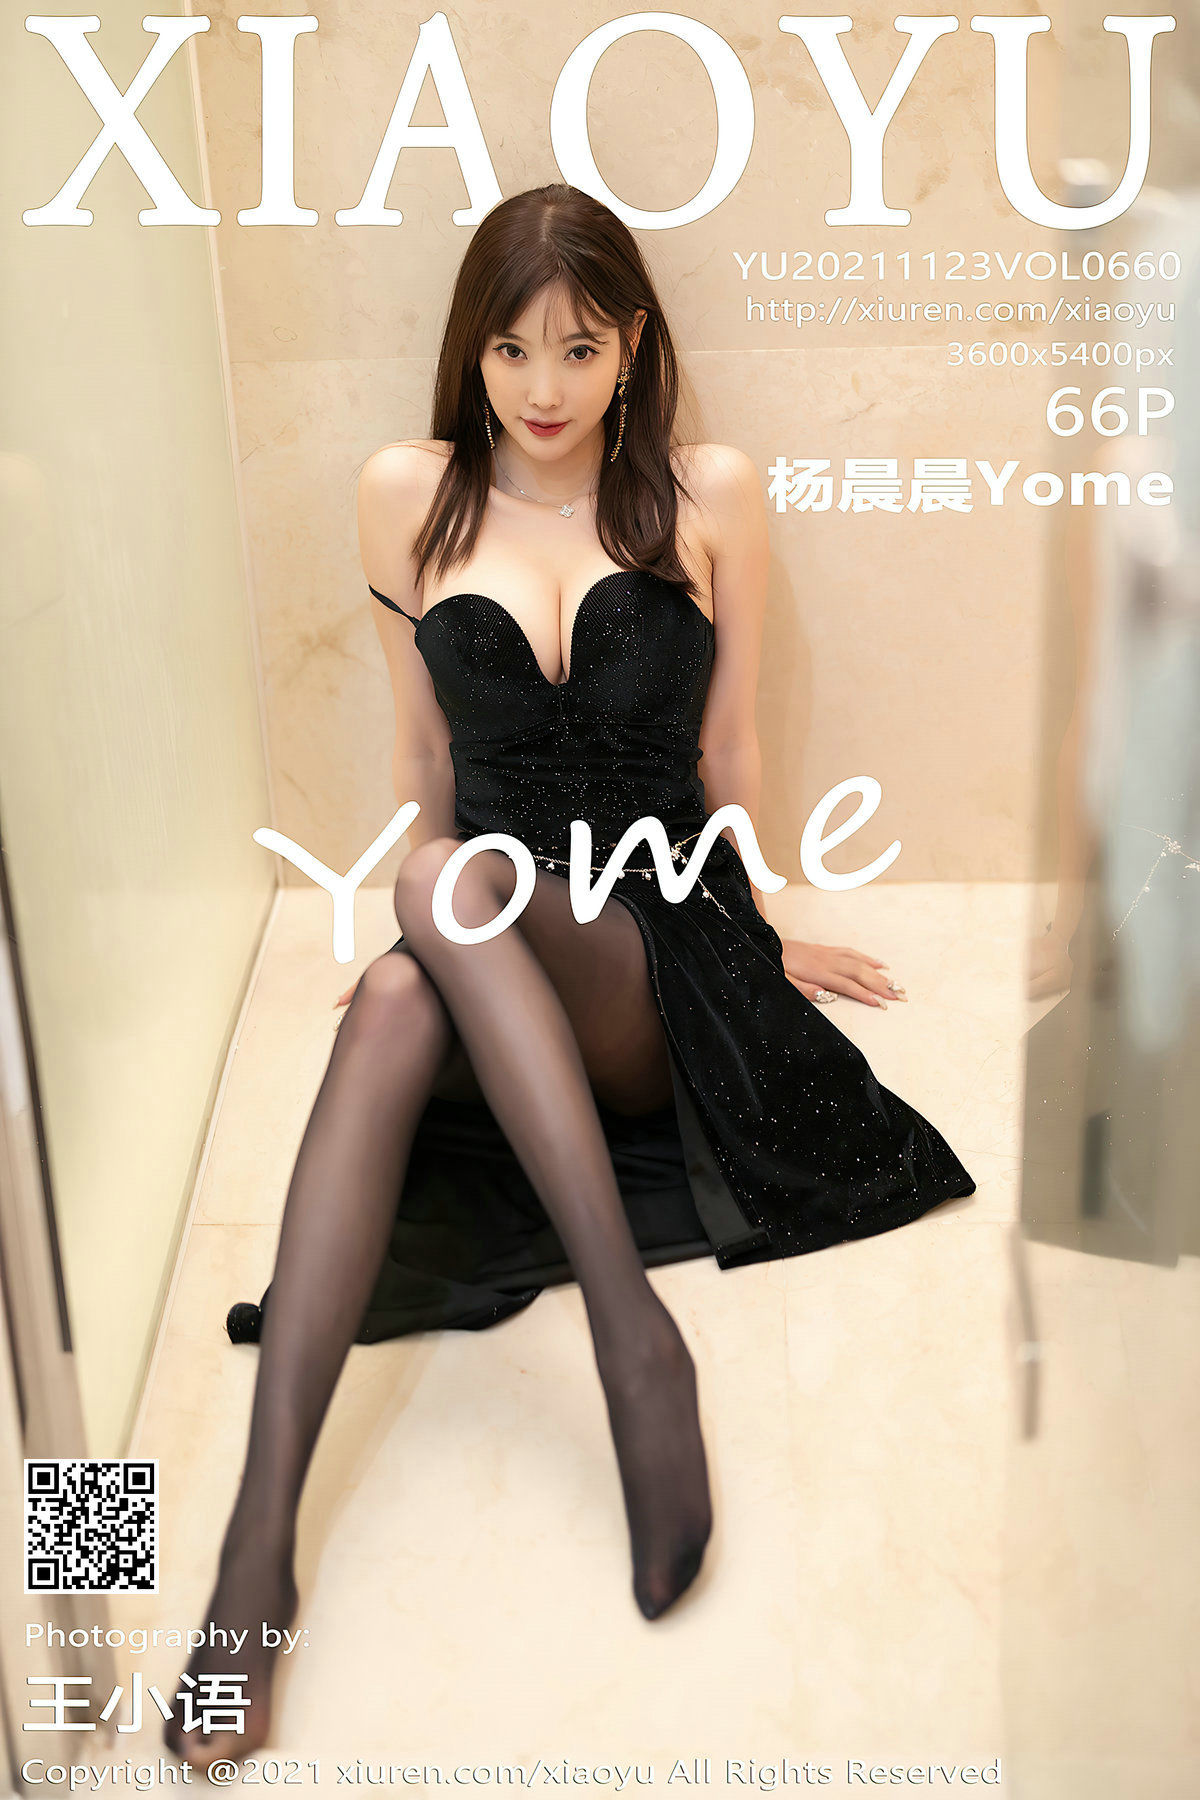 [语画界XIAOYU] Vol.660 杨晨晨Yome